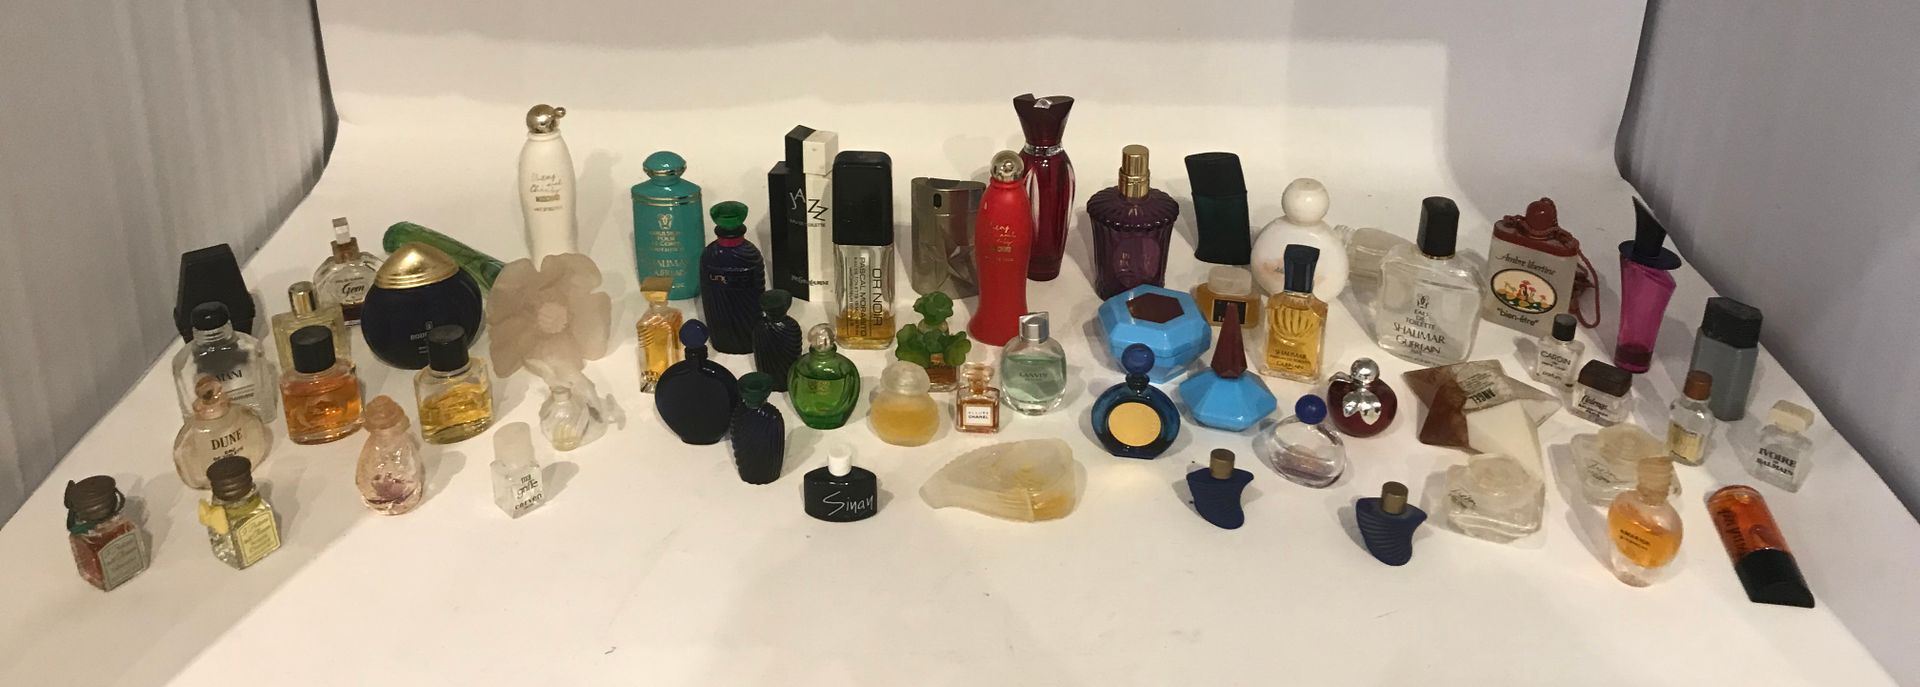 Null Lot de miniatures (59) de différentes marques de parfum

On y joint un ense&hellip;